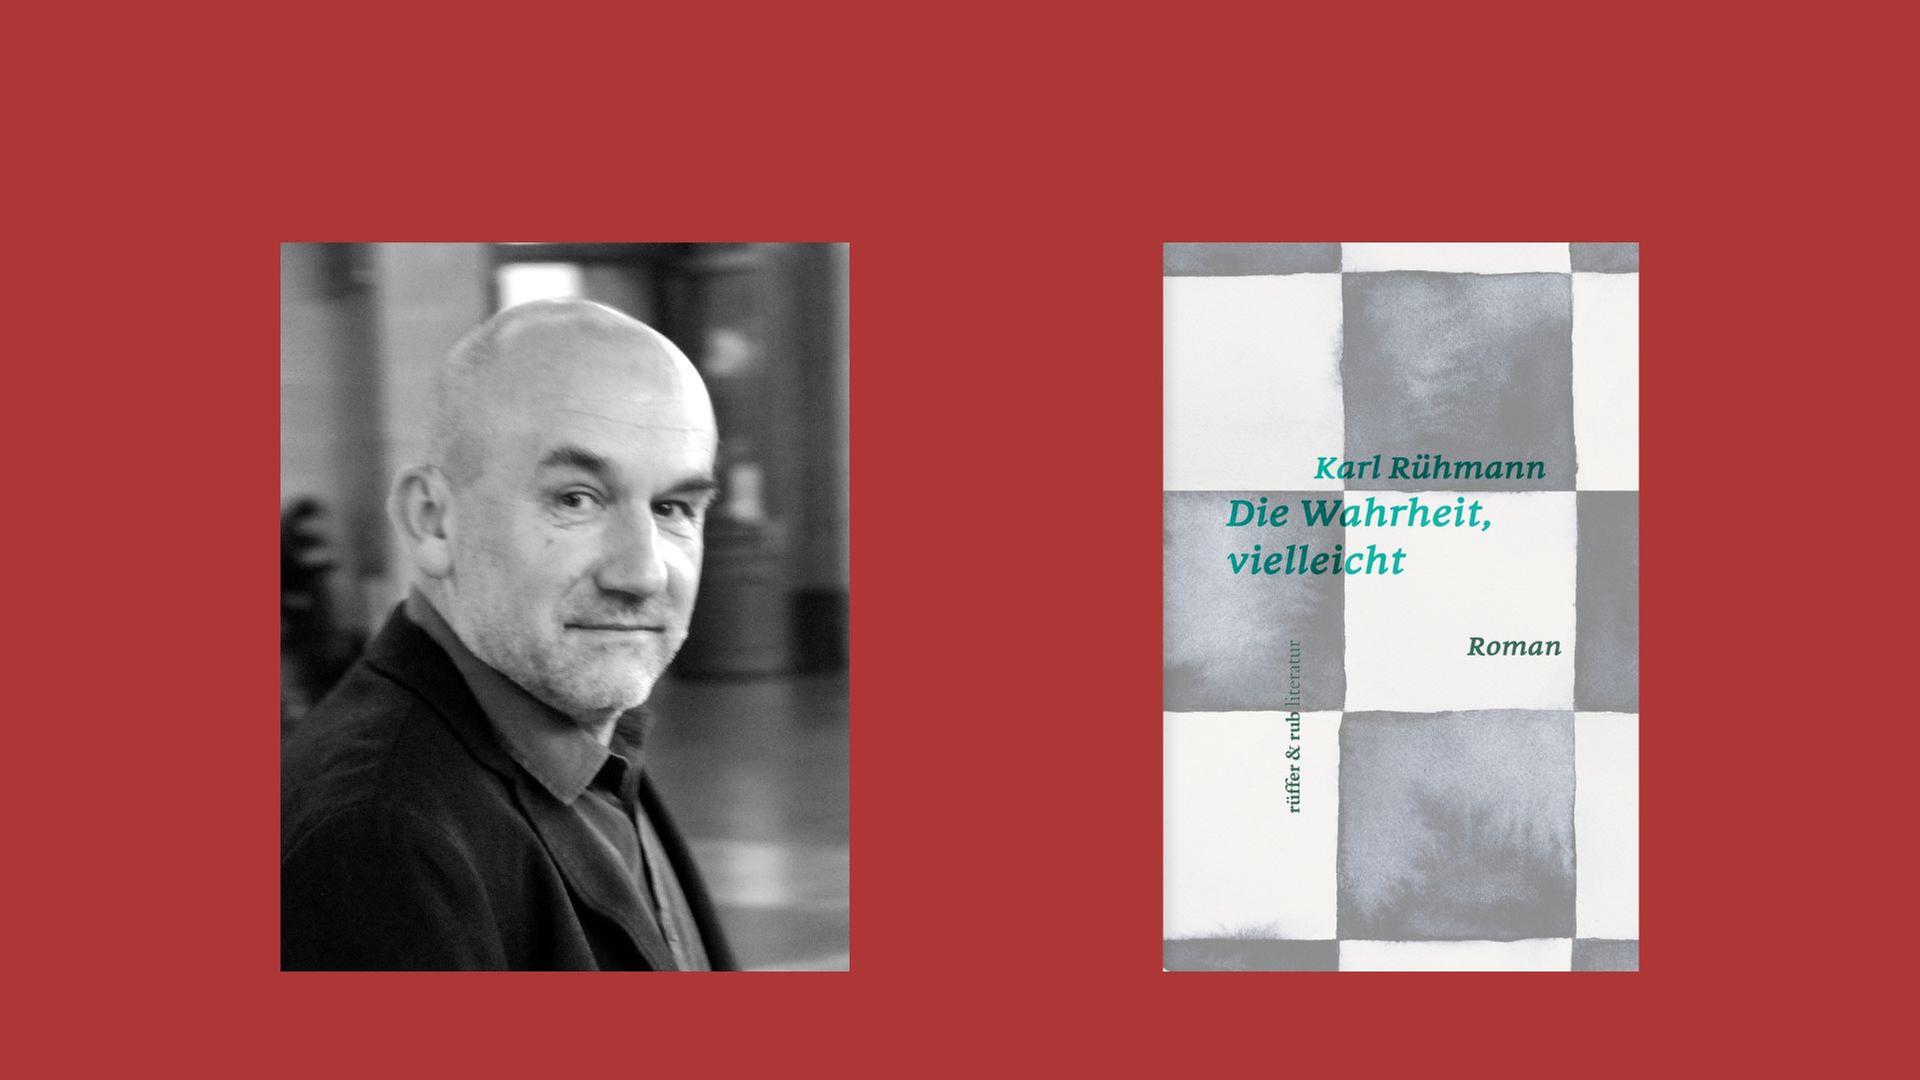 Karl Rühmann: "Die Wahrheit, vielleicht"
Zu sehen sind der Autor und das Buchcover